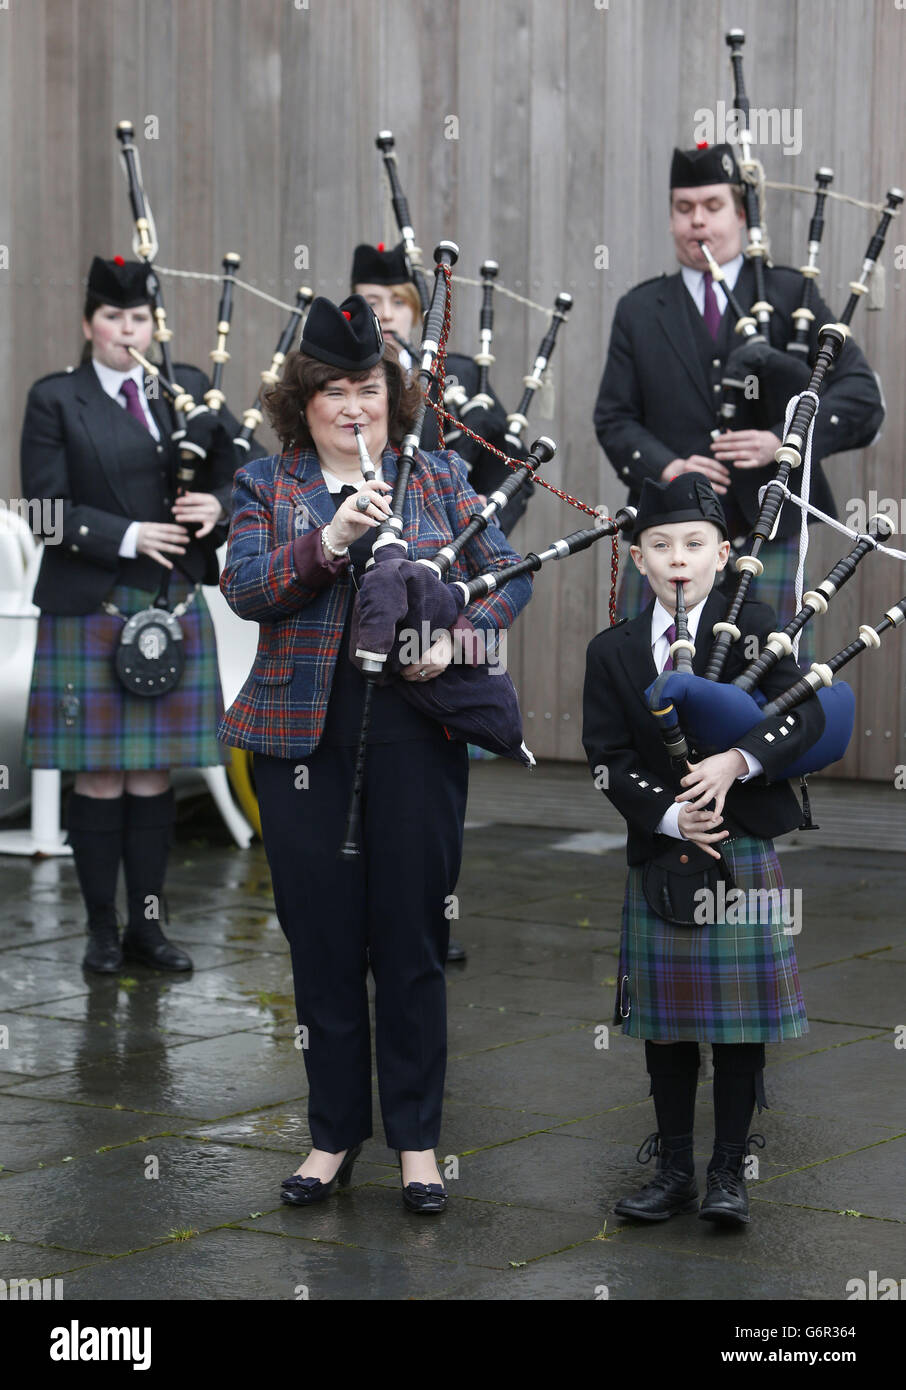 Susan Boyle est dévoilée comme chef de l'événement de la bande de tuyaux au Bathgate Partnership Centre en Écosse. Le chanteur prendra le poste au British Pipe Band Championship 2014. Banque D'Images